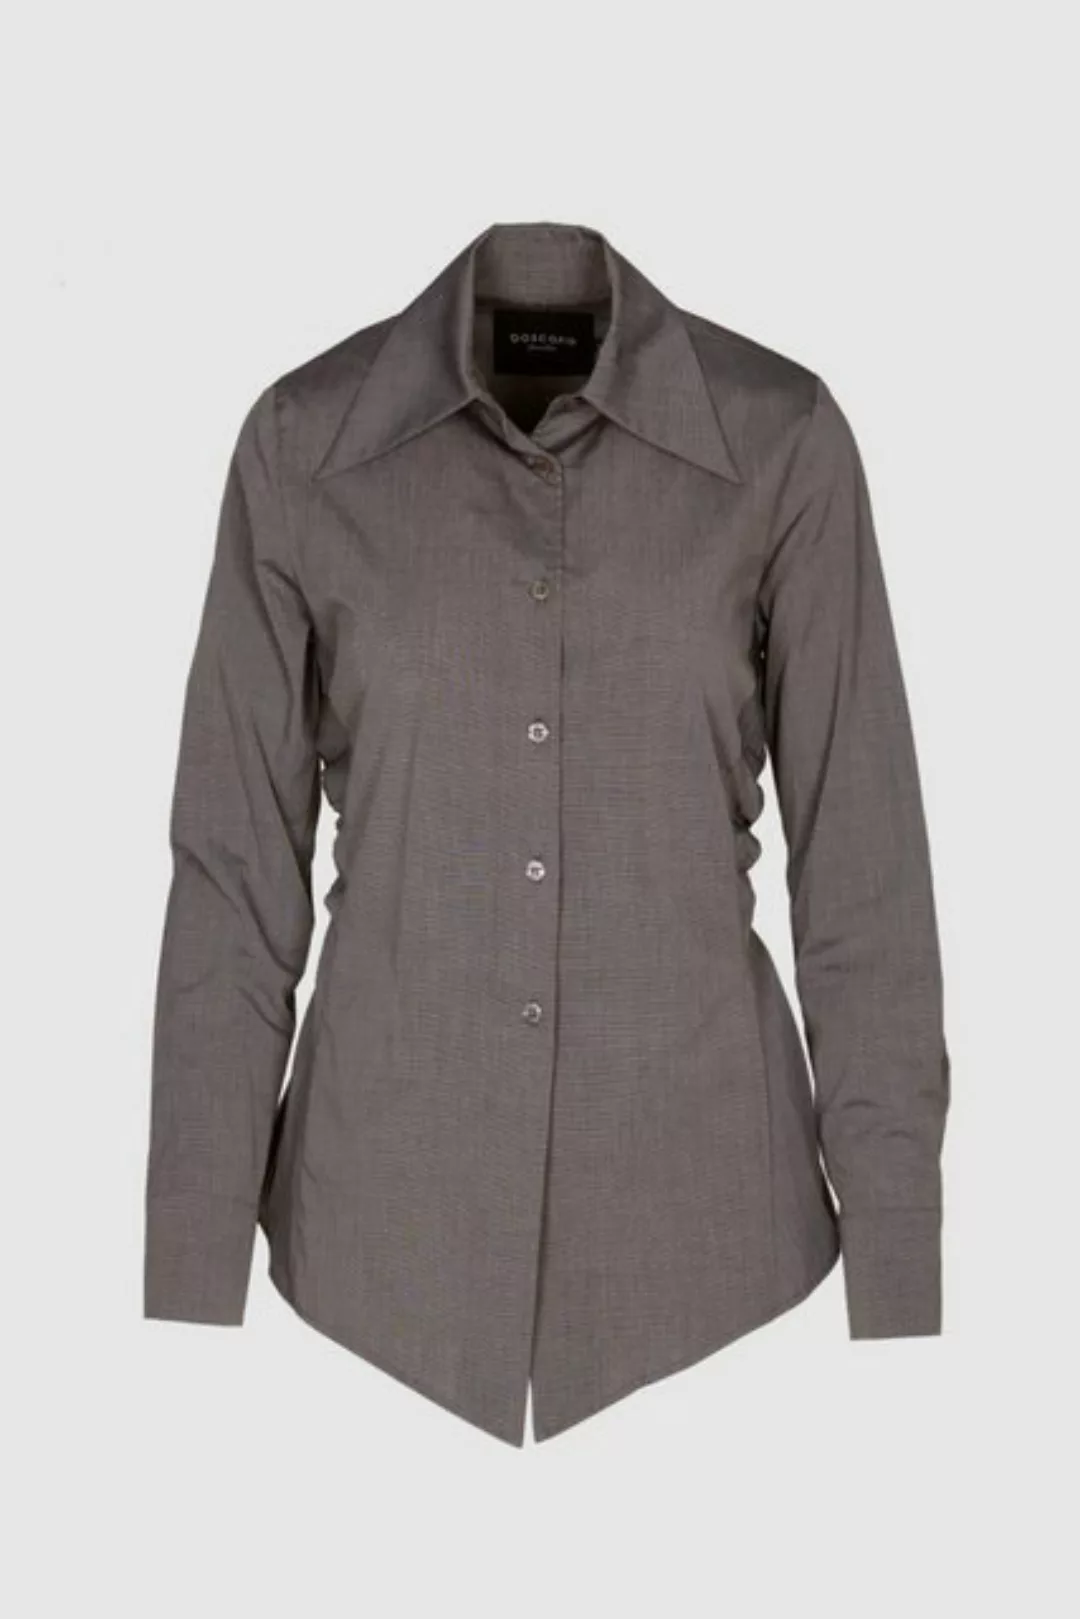 Boscana Hemdbluse Bluse aus Baumwolle in Grau Melange, Rosa, Weiß günstig online kaufen